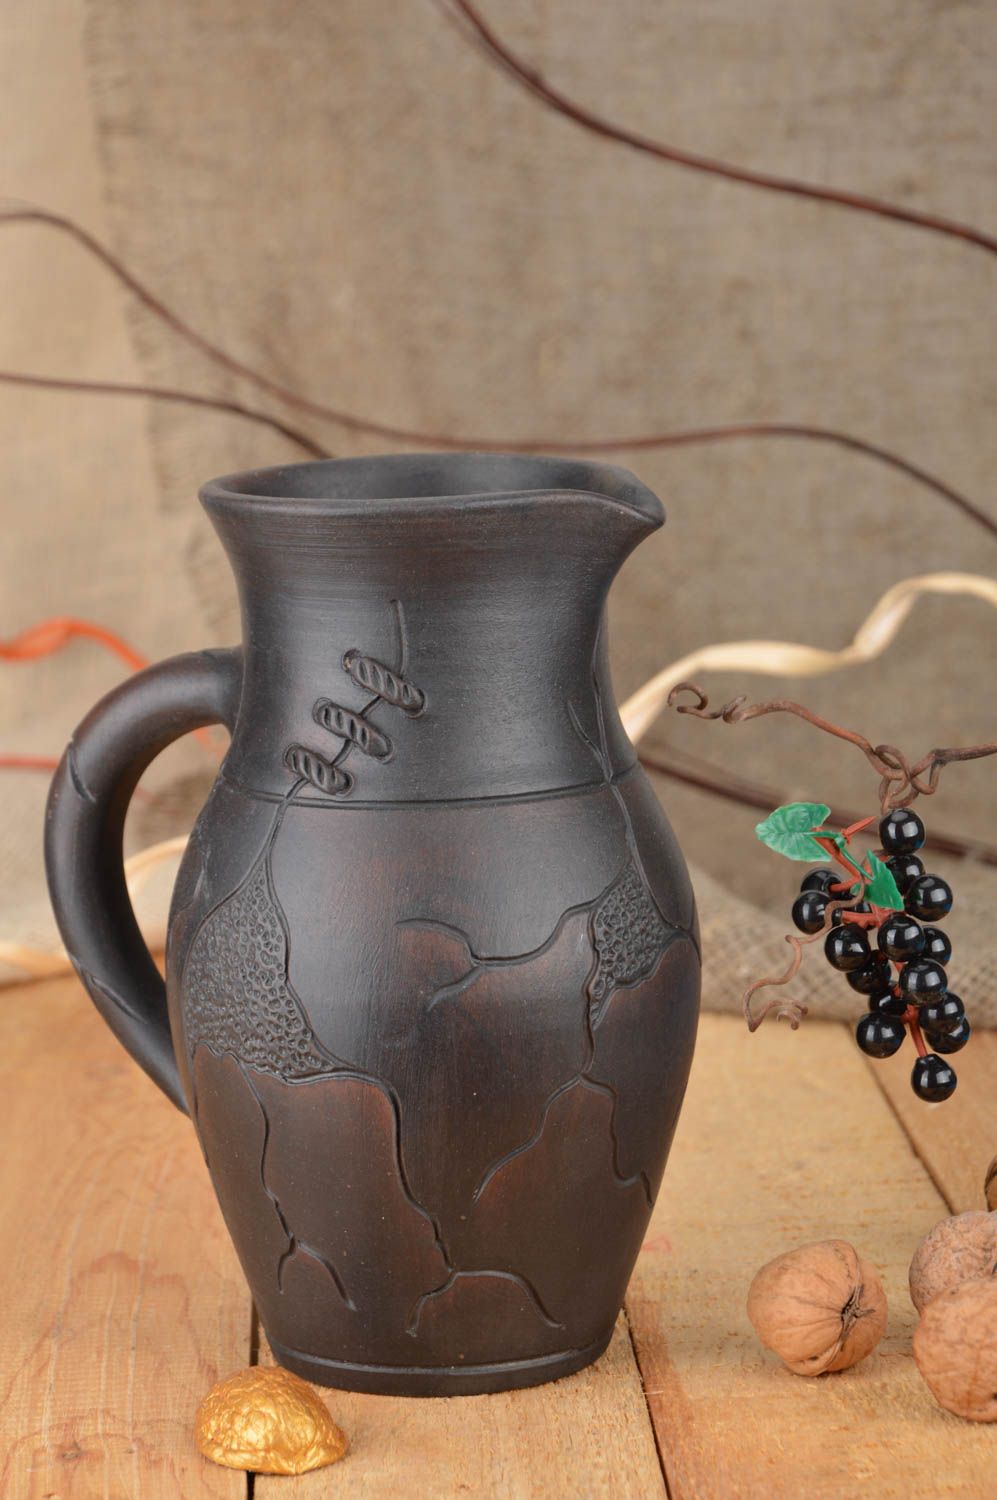 60 oz ceramic water jug with handle in dark brown color 2 lb photo 1